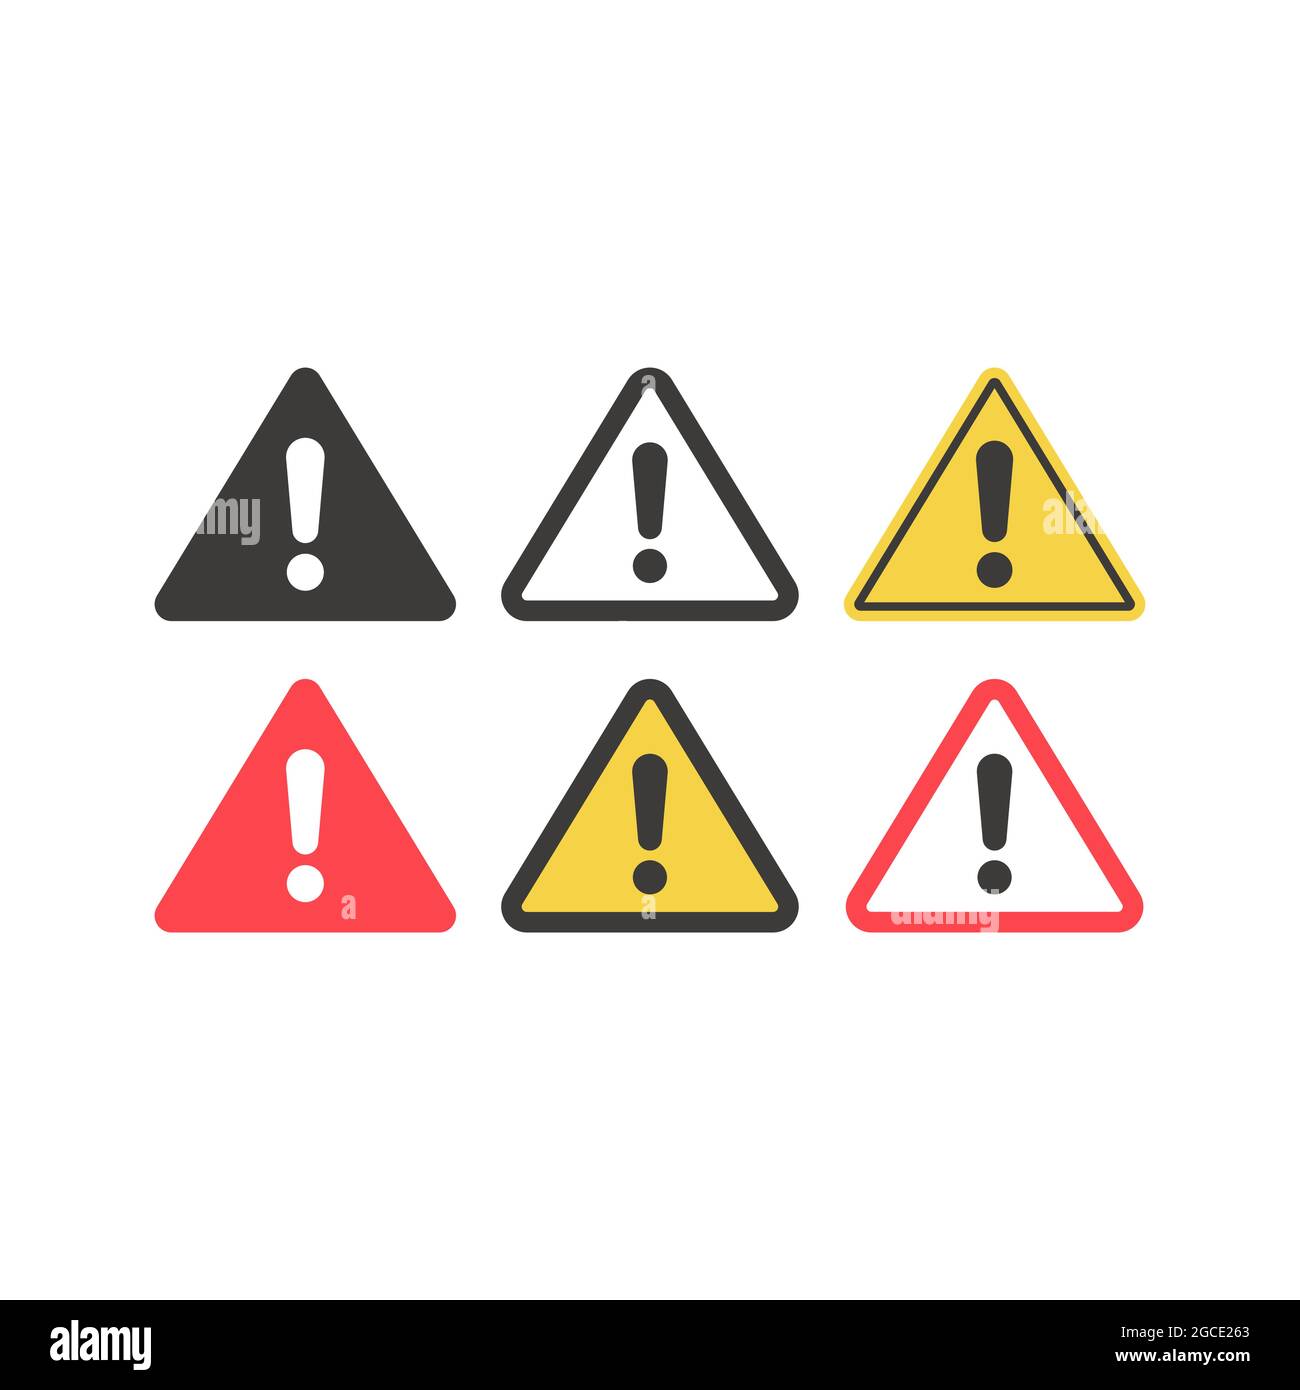 Warnzeichen mit Ausrufezeichen. Dreieckiges Vektorsymbol in Gelb, Rot und Schwarz. Stock Vektor